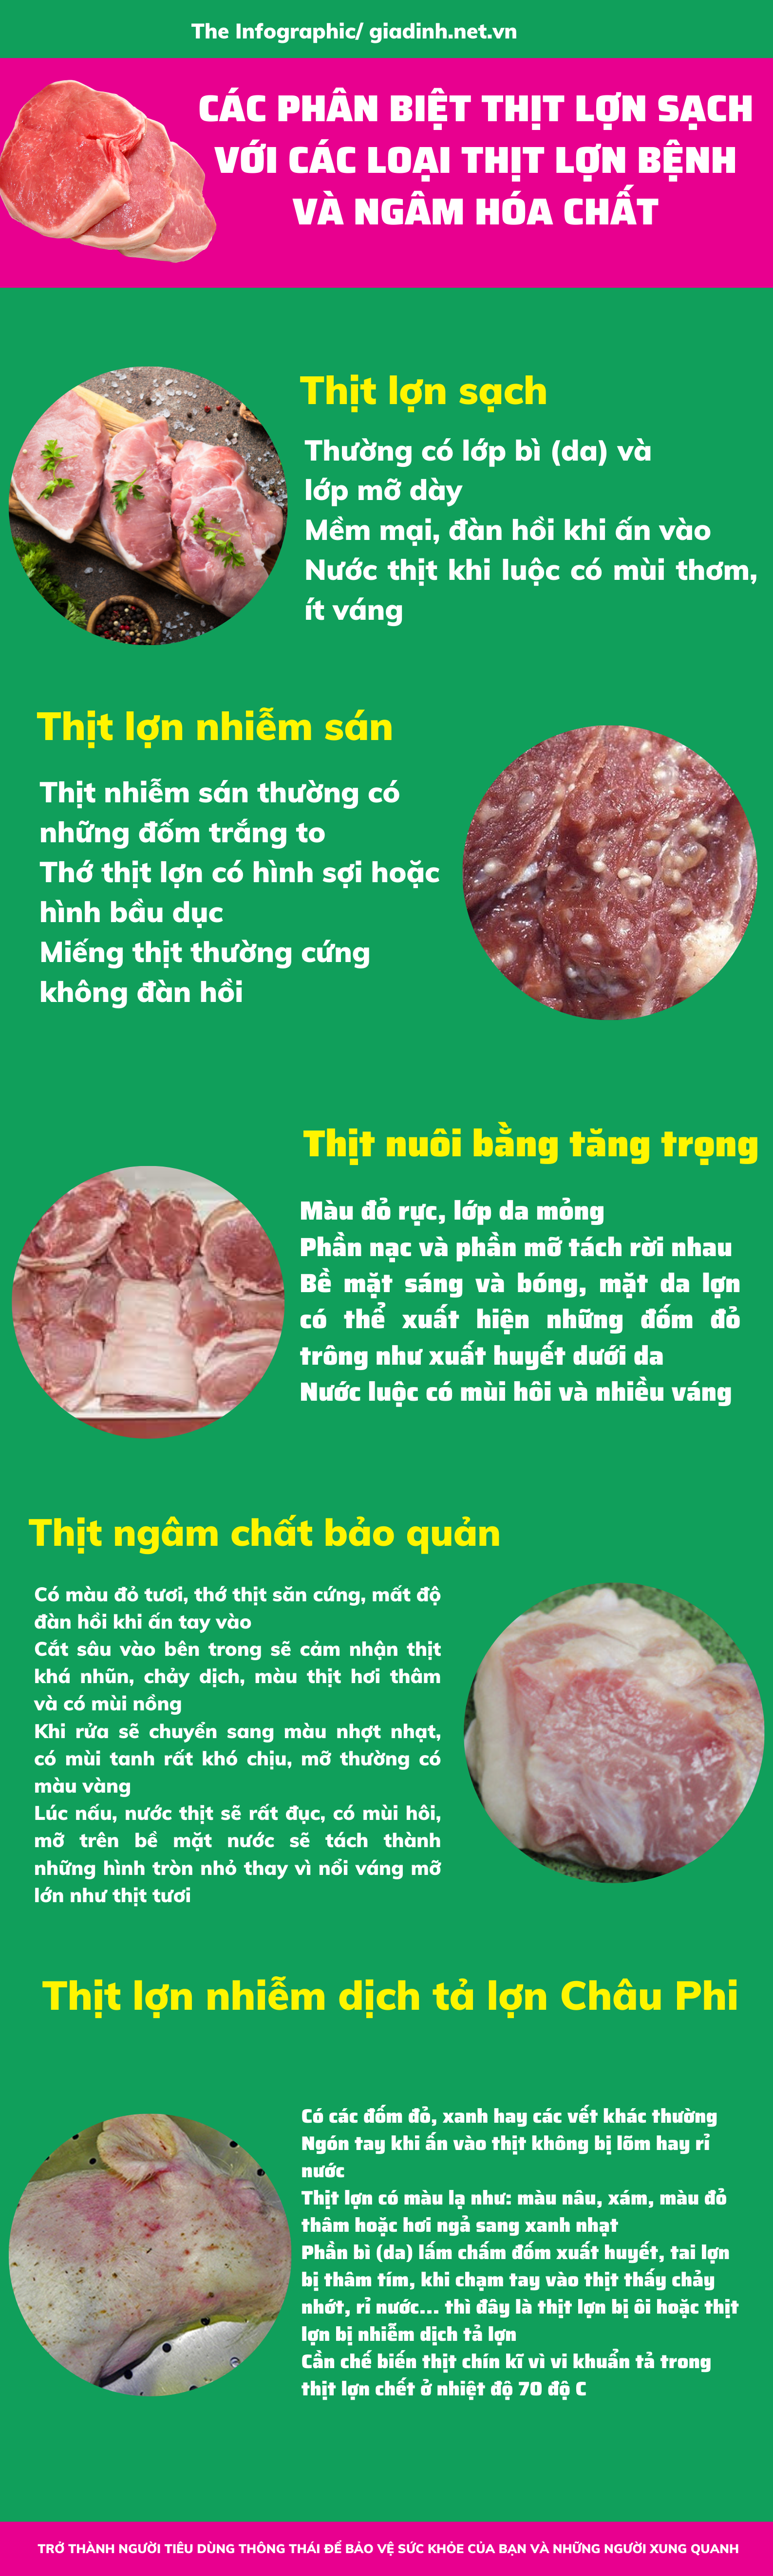 Cách phân biệt thịt lợn sạch và thịt lợn bệnh, ngâm hóa chất - Ảnh 1.